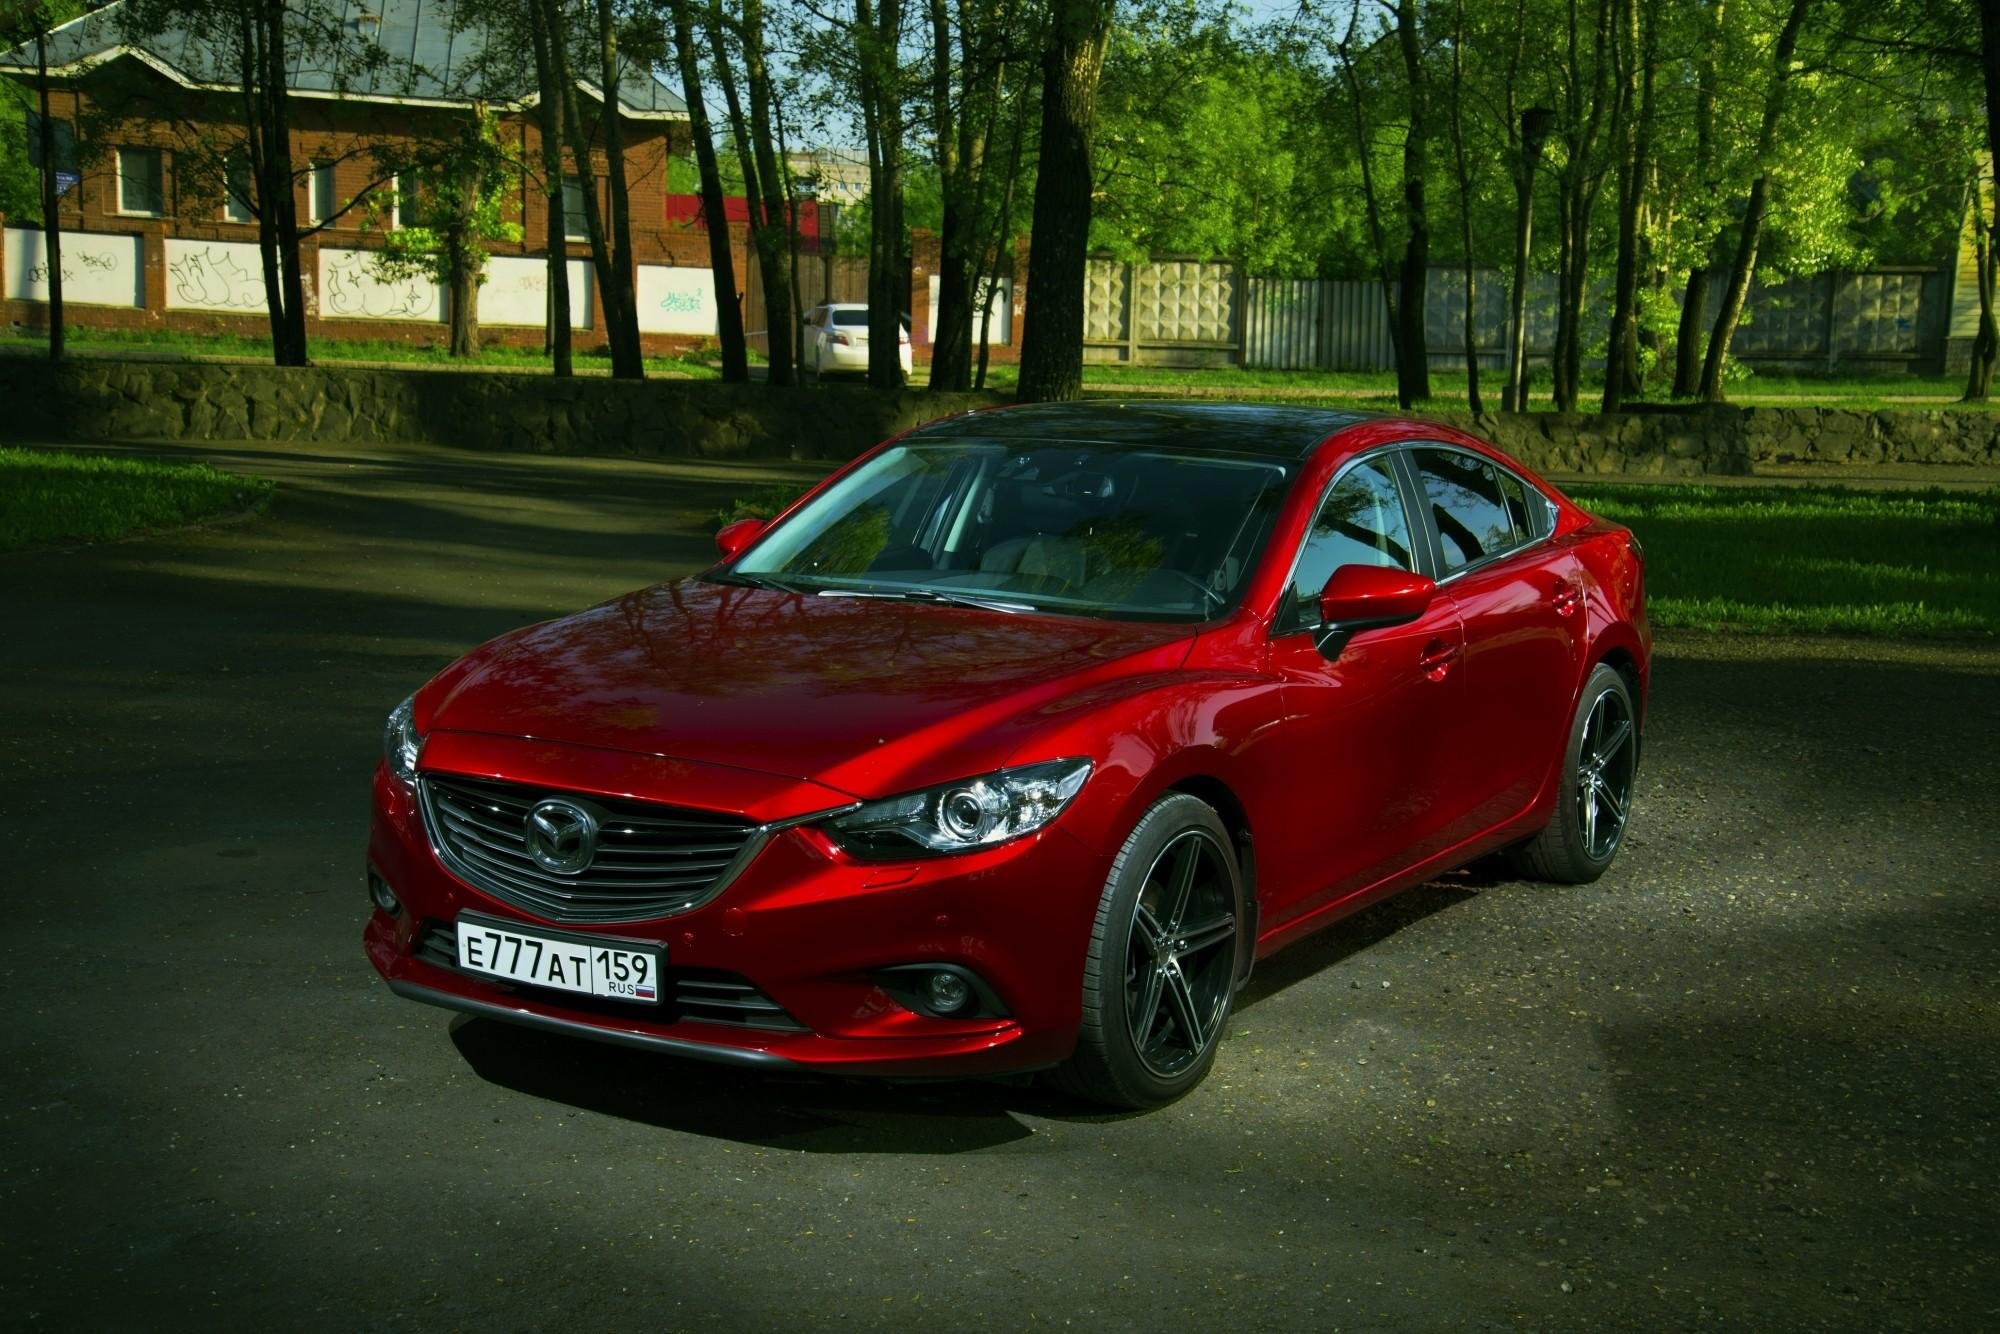 Купить mazda новосибирск. Mazda 6 Red. Мазда 6 2015 года красная. Мазда 6 красная новый кузов. Мазда 6 красная седан.